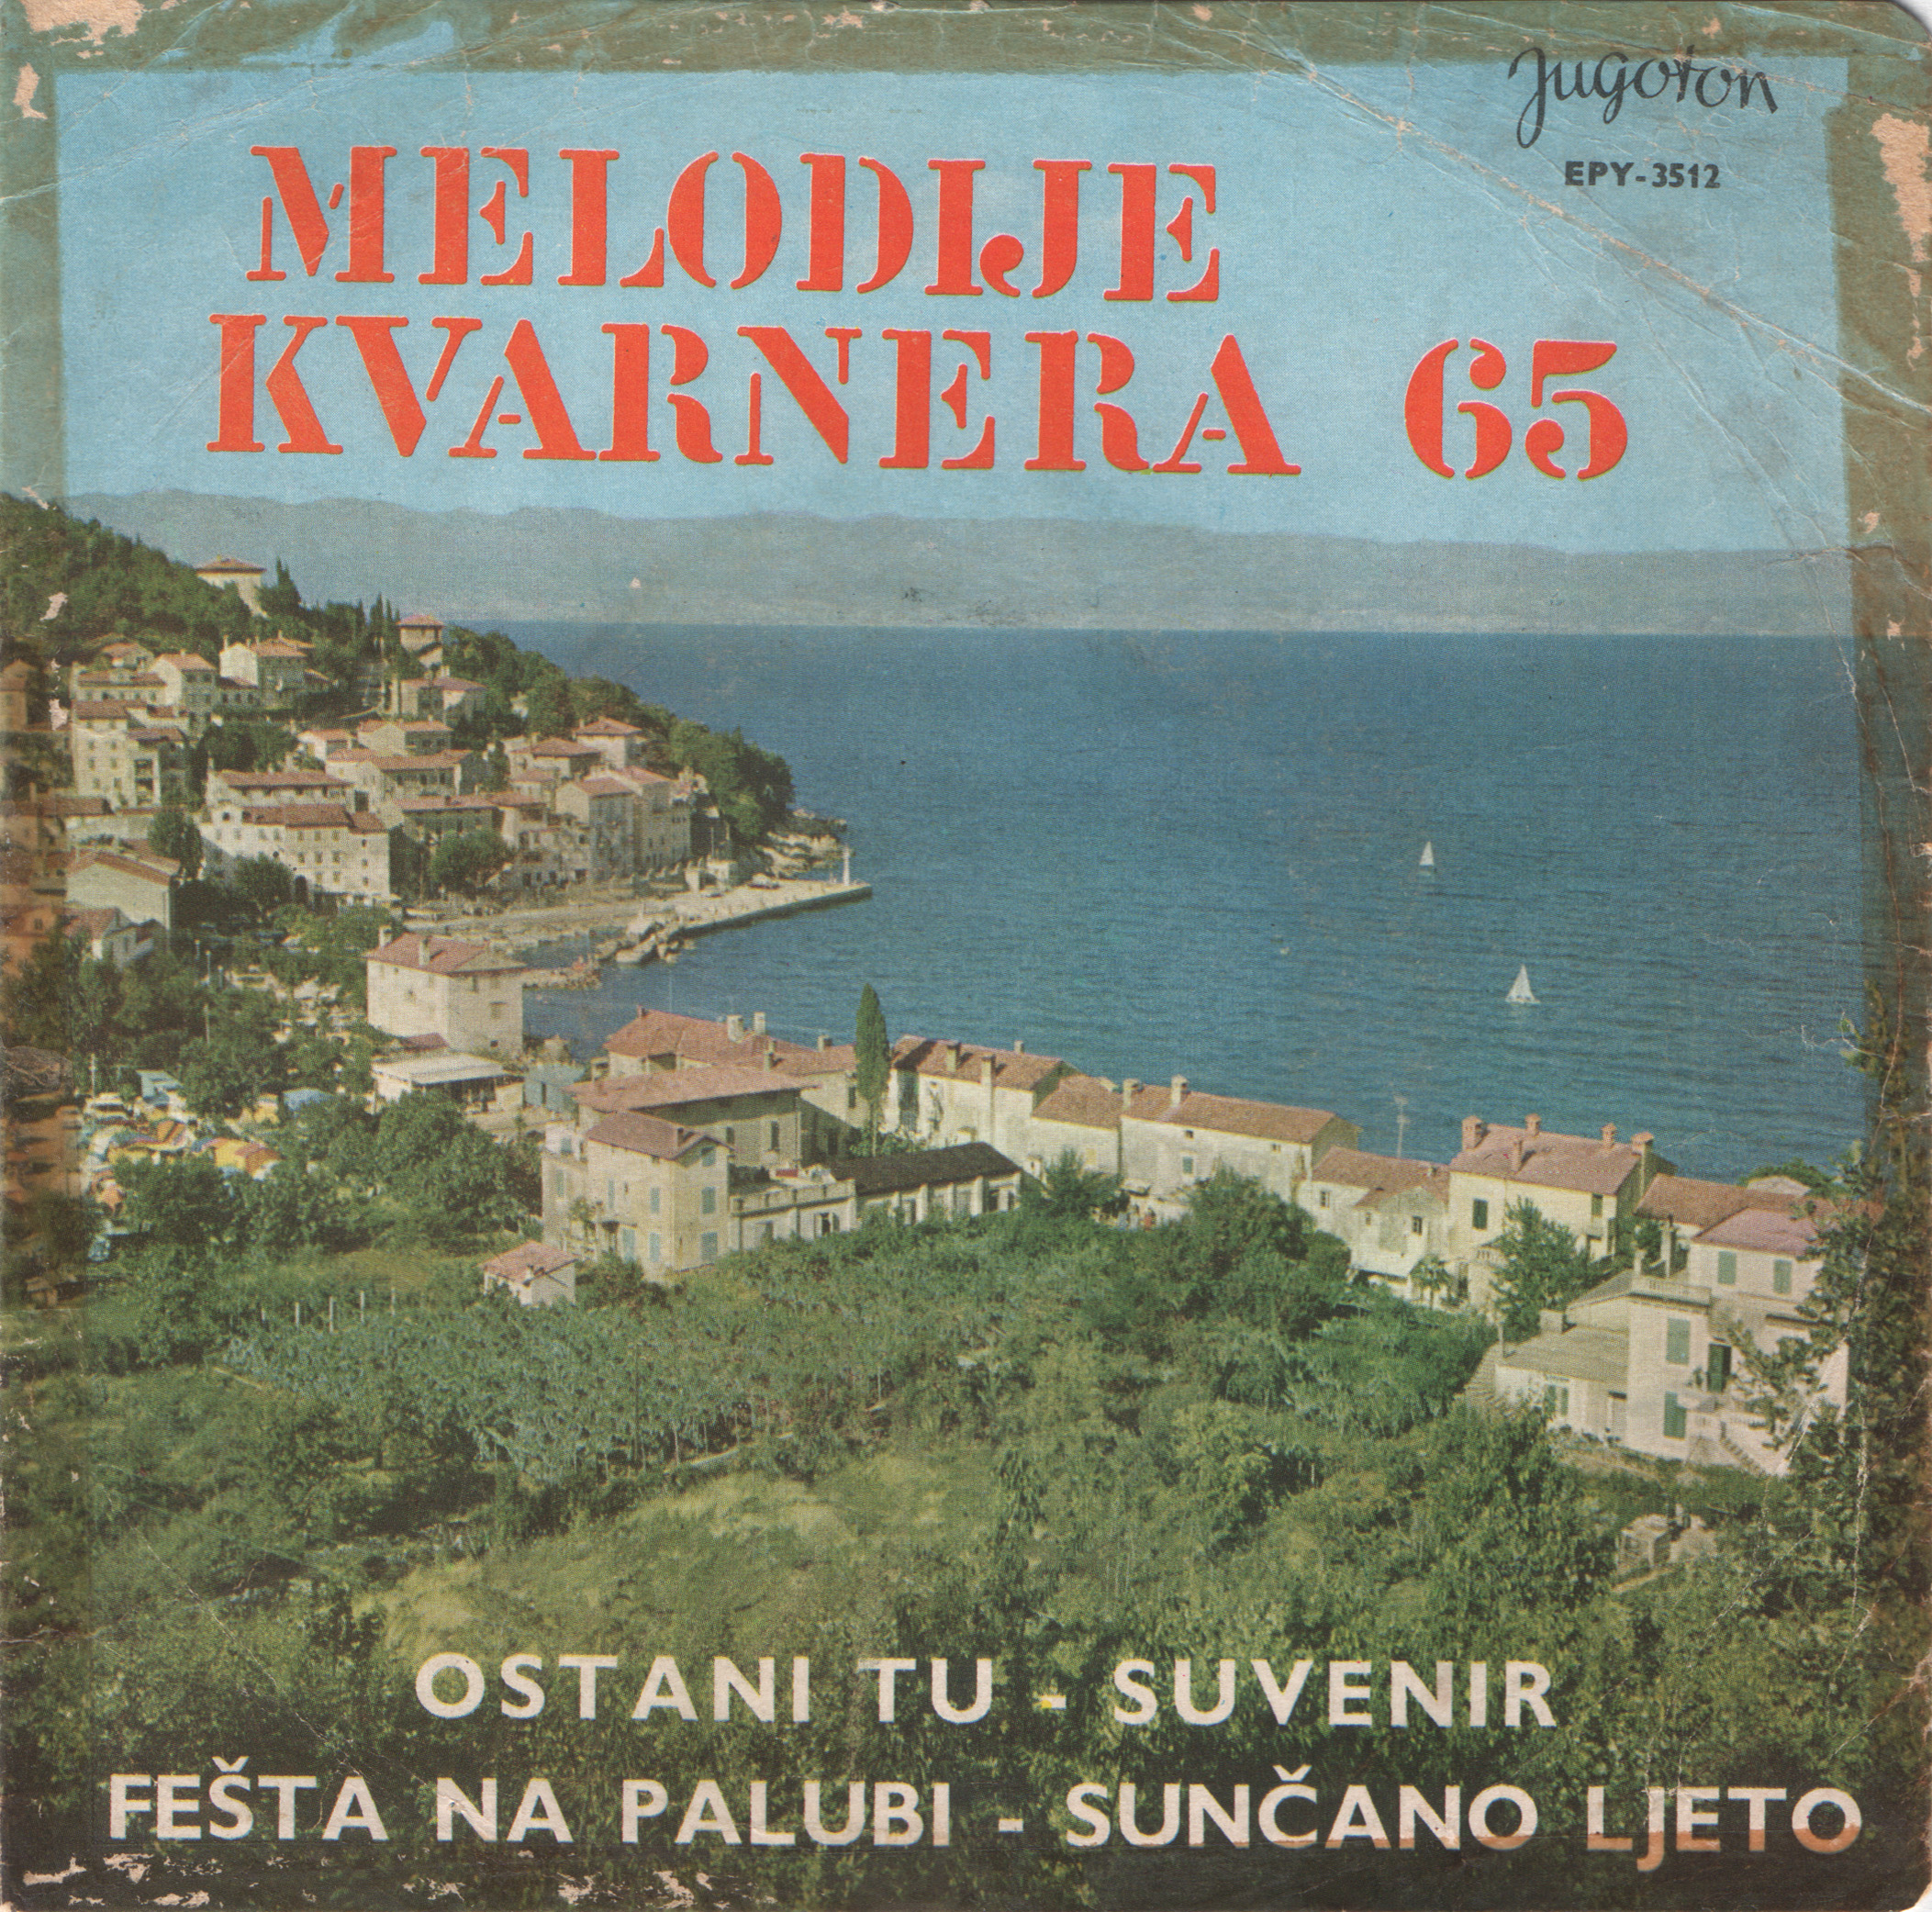 VA 1965 Melodije Kvarnera 65 a